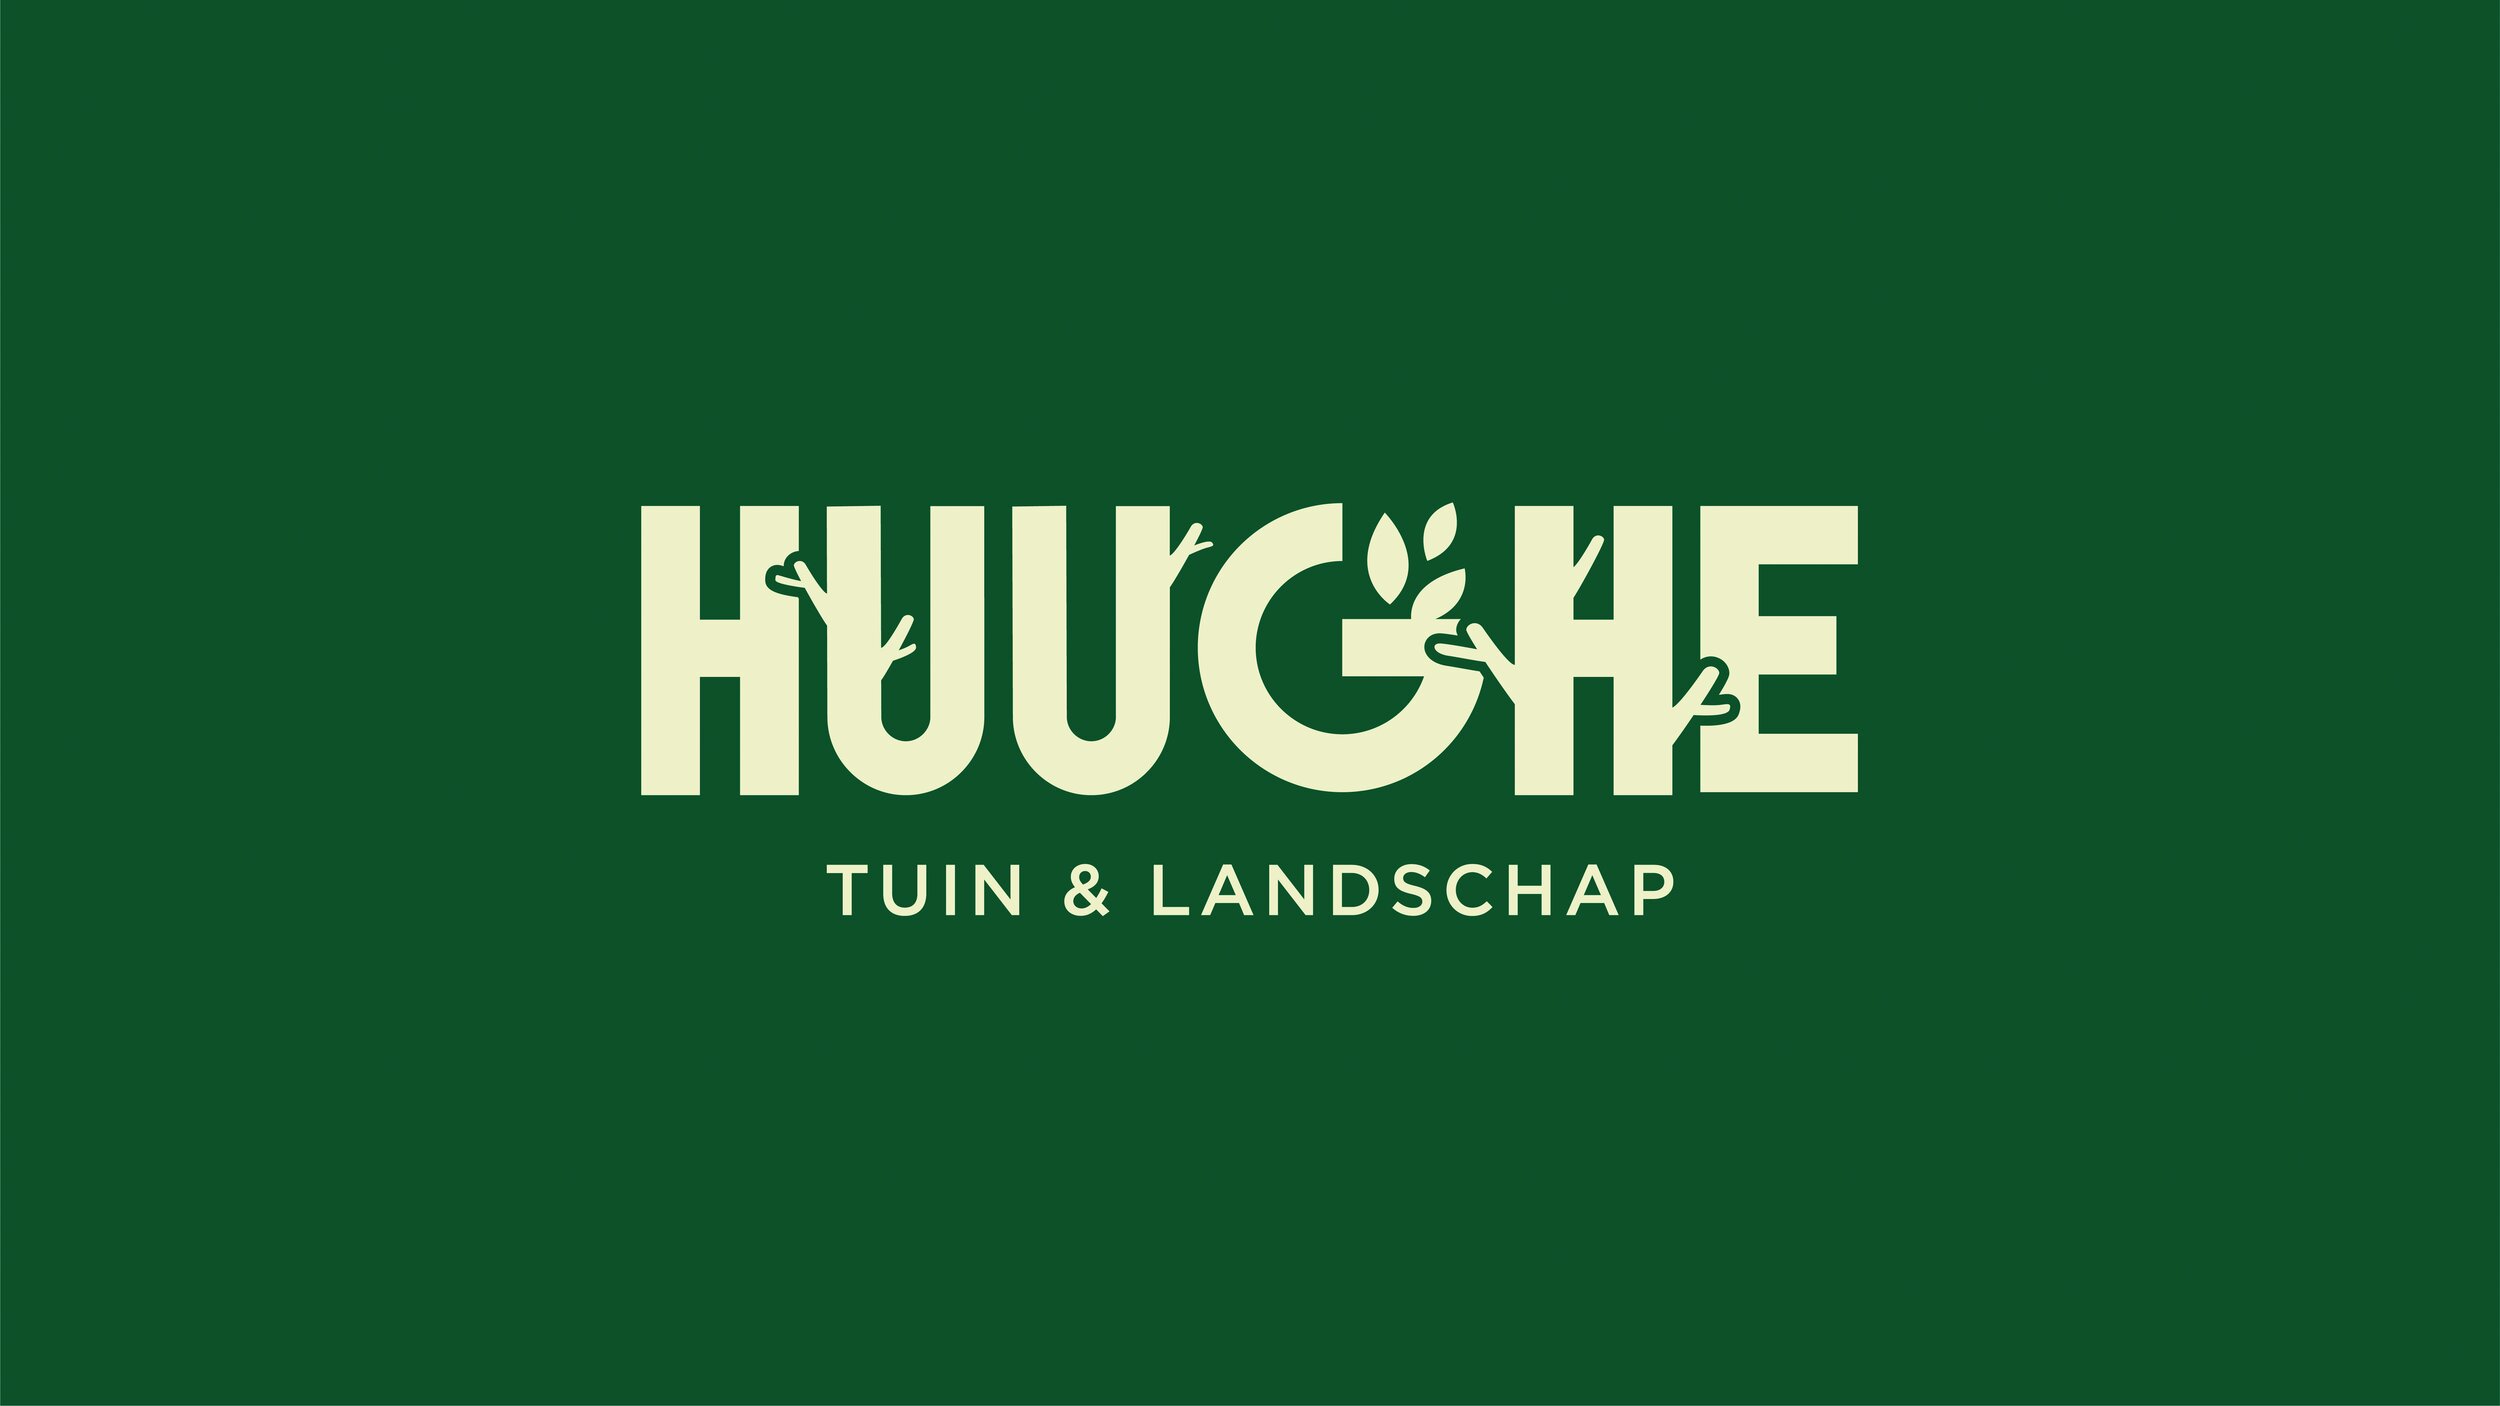 Huughe_Logo_Tuin&Landschap_OpGroen_XL.jpg